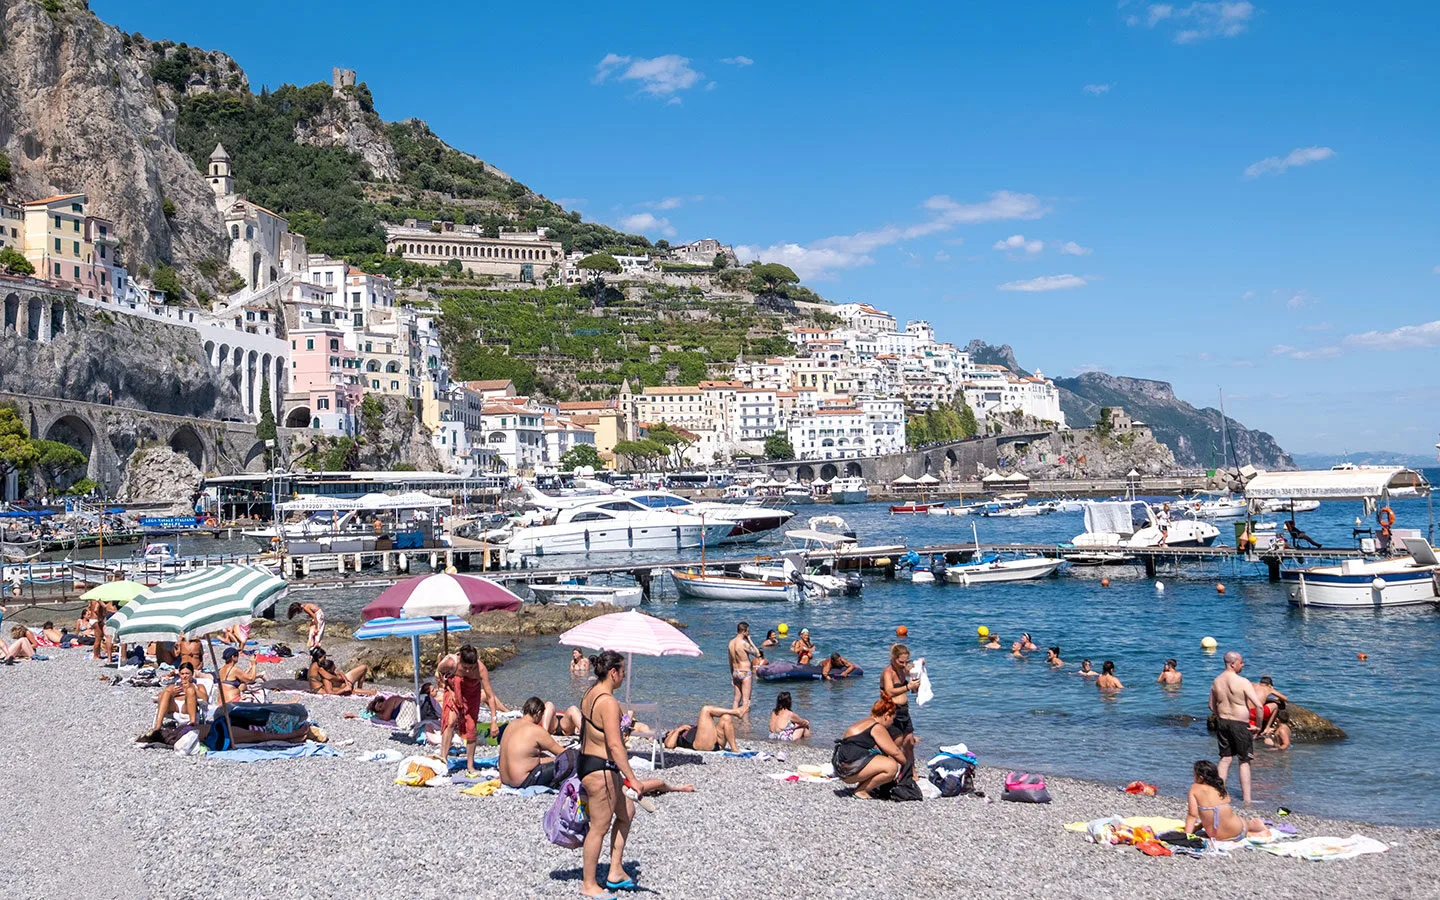 Spiaggia del Porto free beach in Amalfi